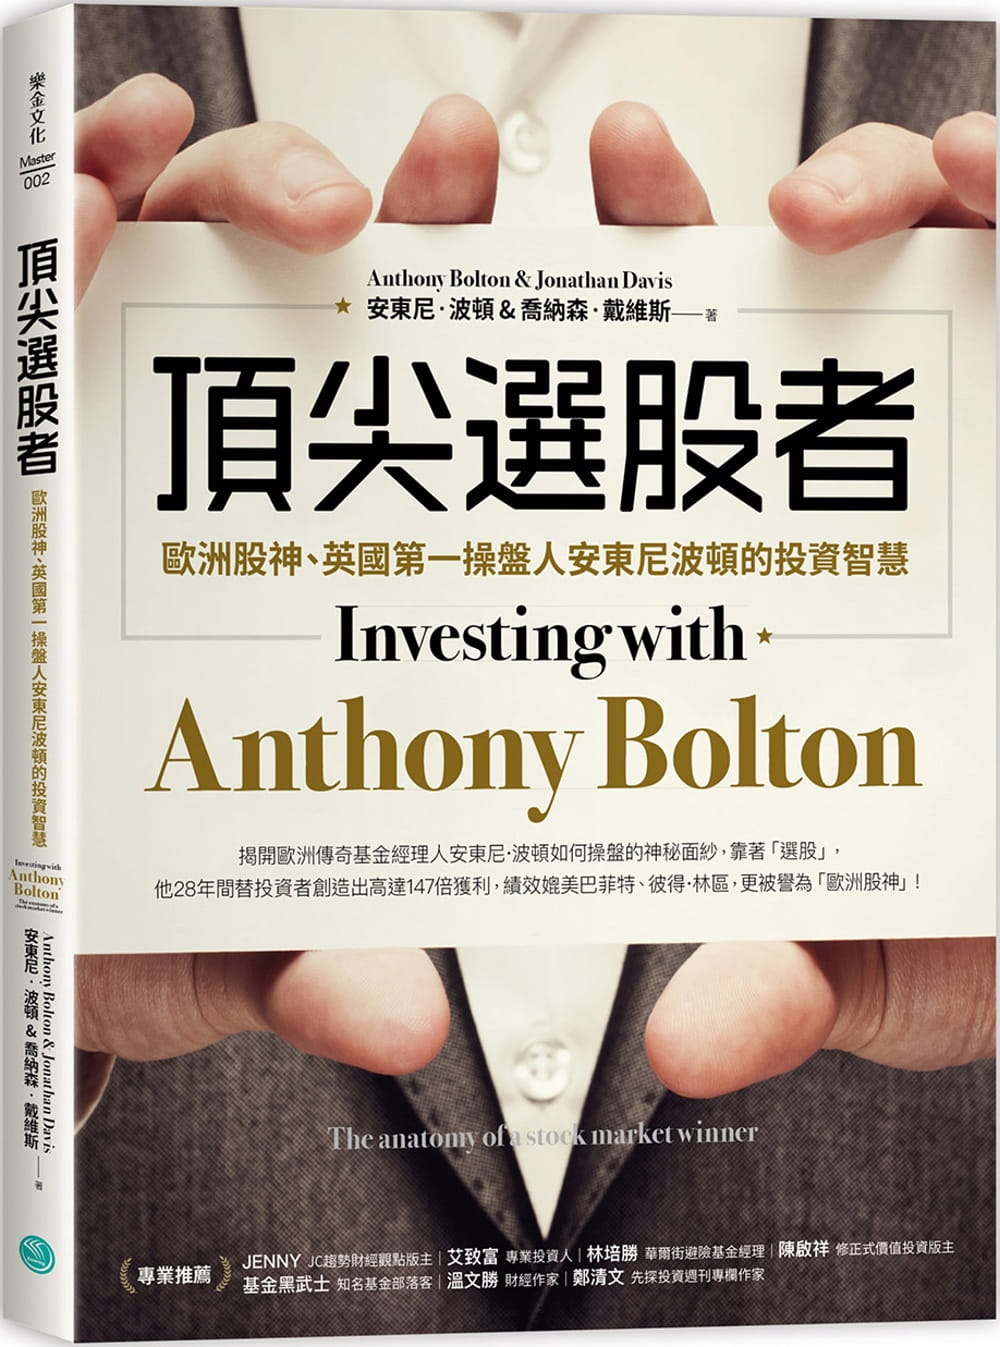 頂尖選股者：歐洲股神、英國第一操盤人安東尼波頓的投資智慧